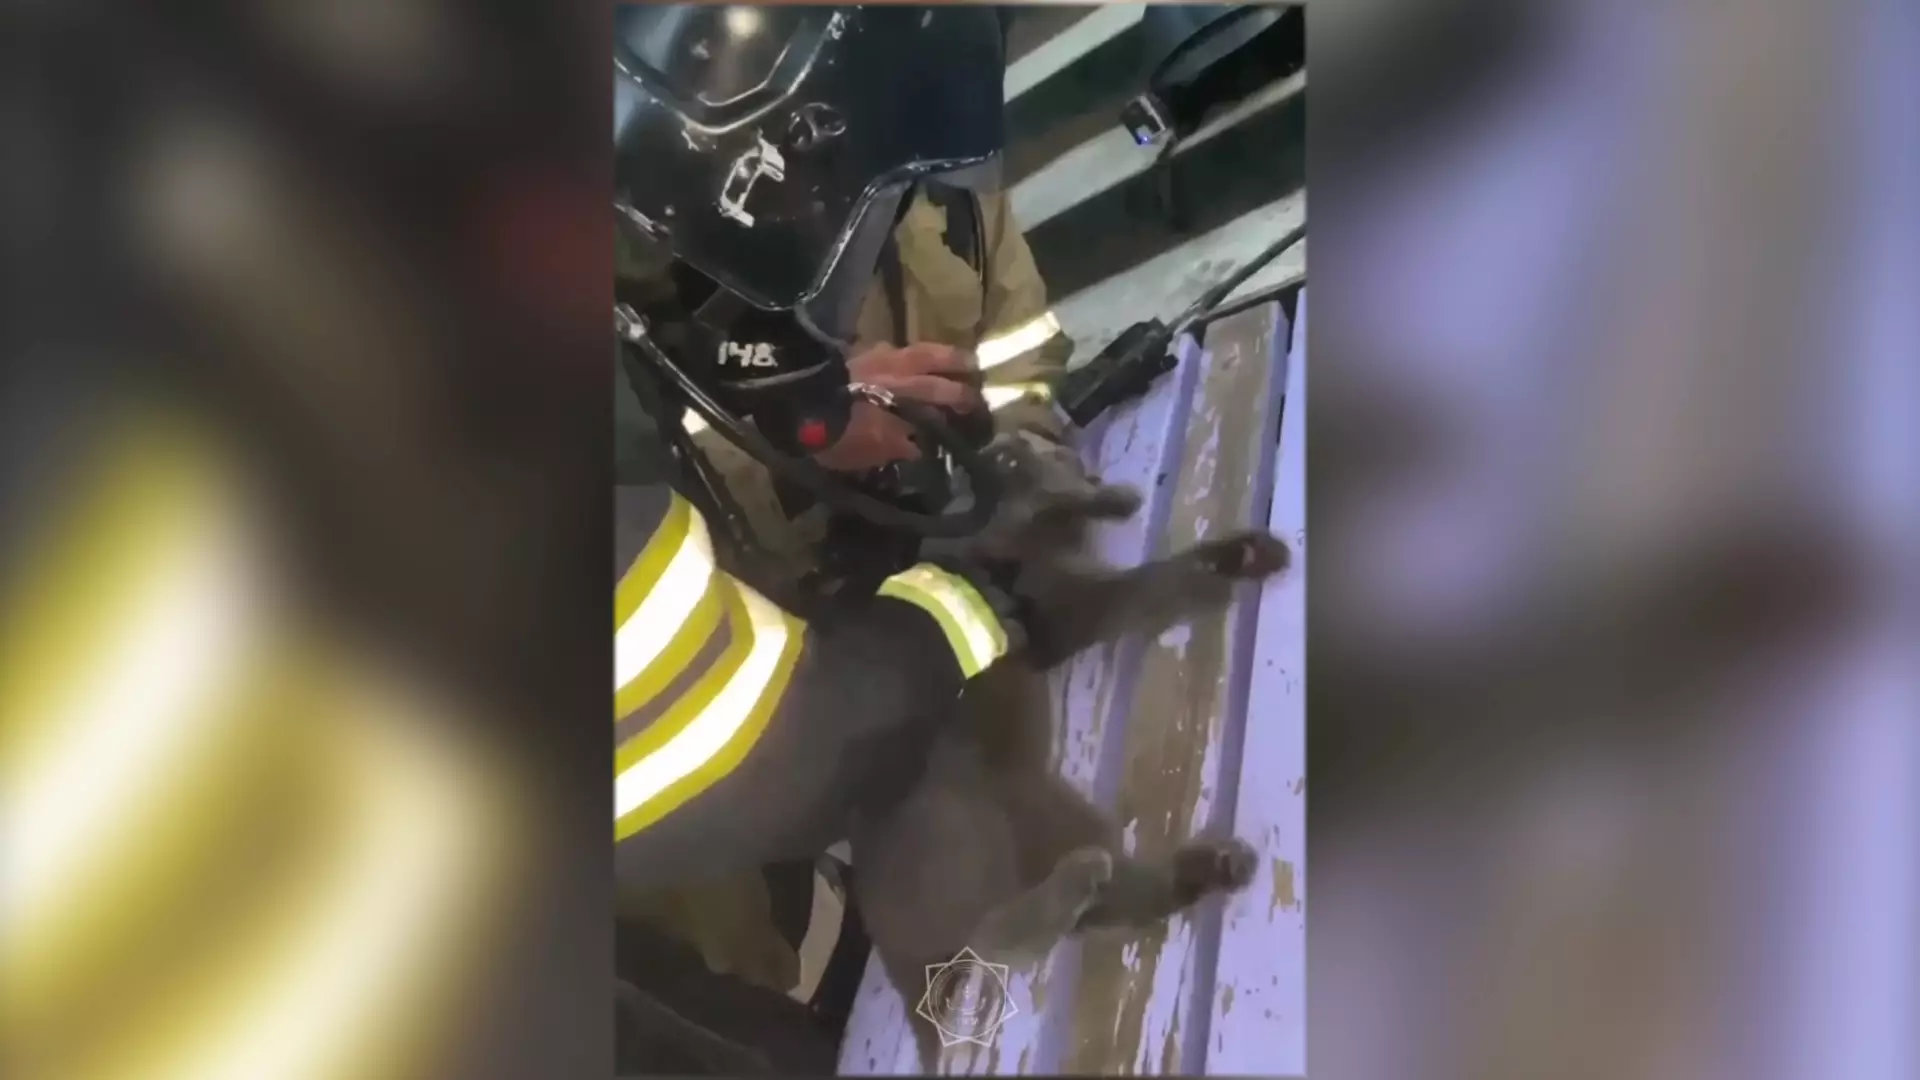 "Откачали", - столичные огнеборцы спасли кошку из горящей квартиры